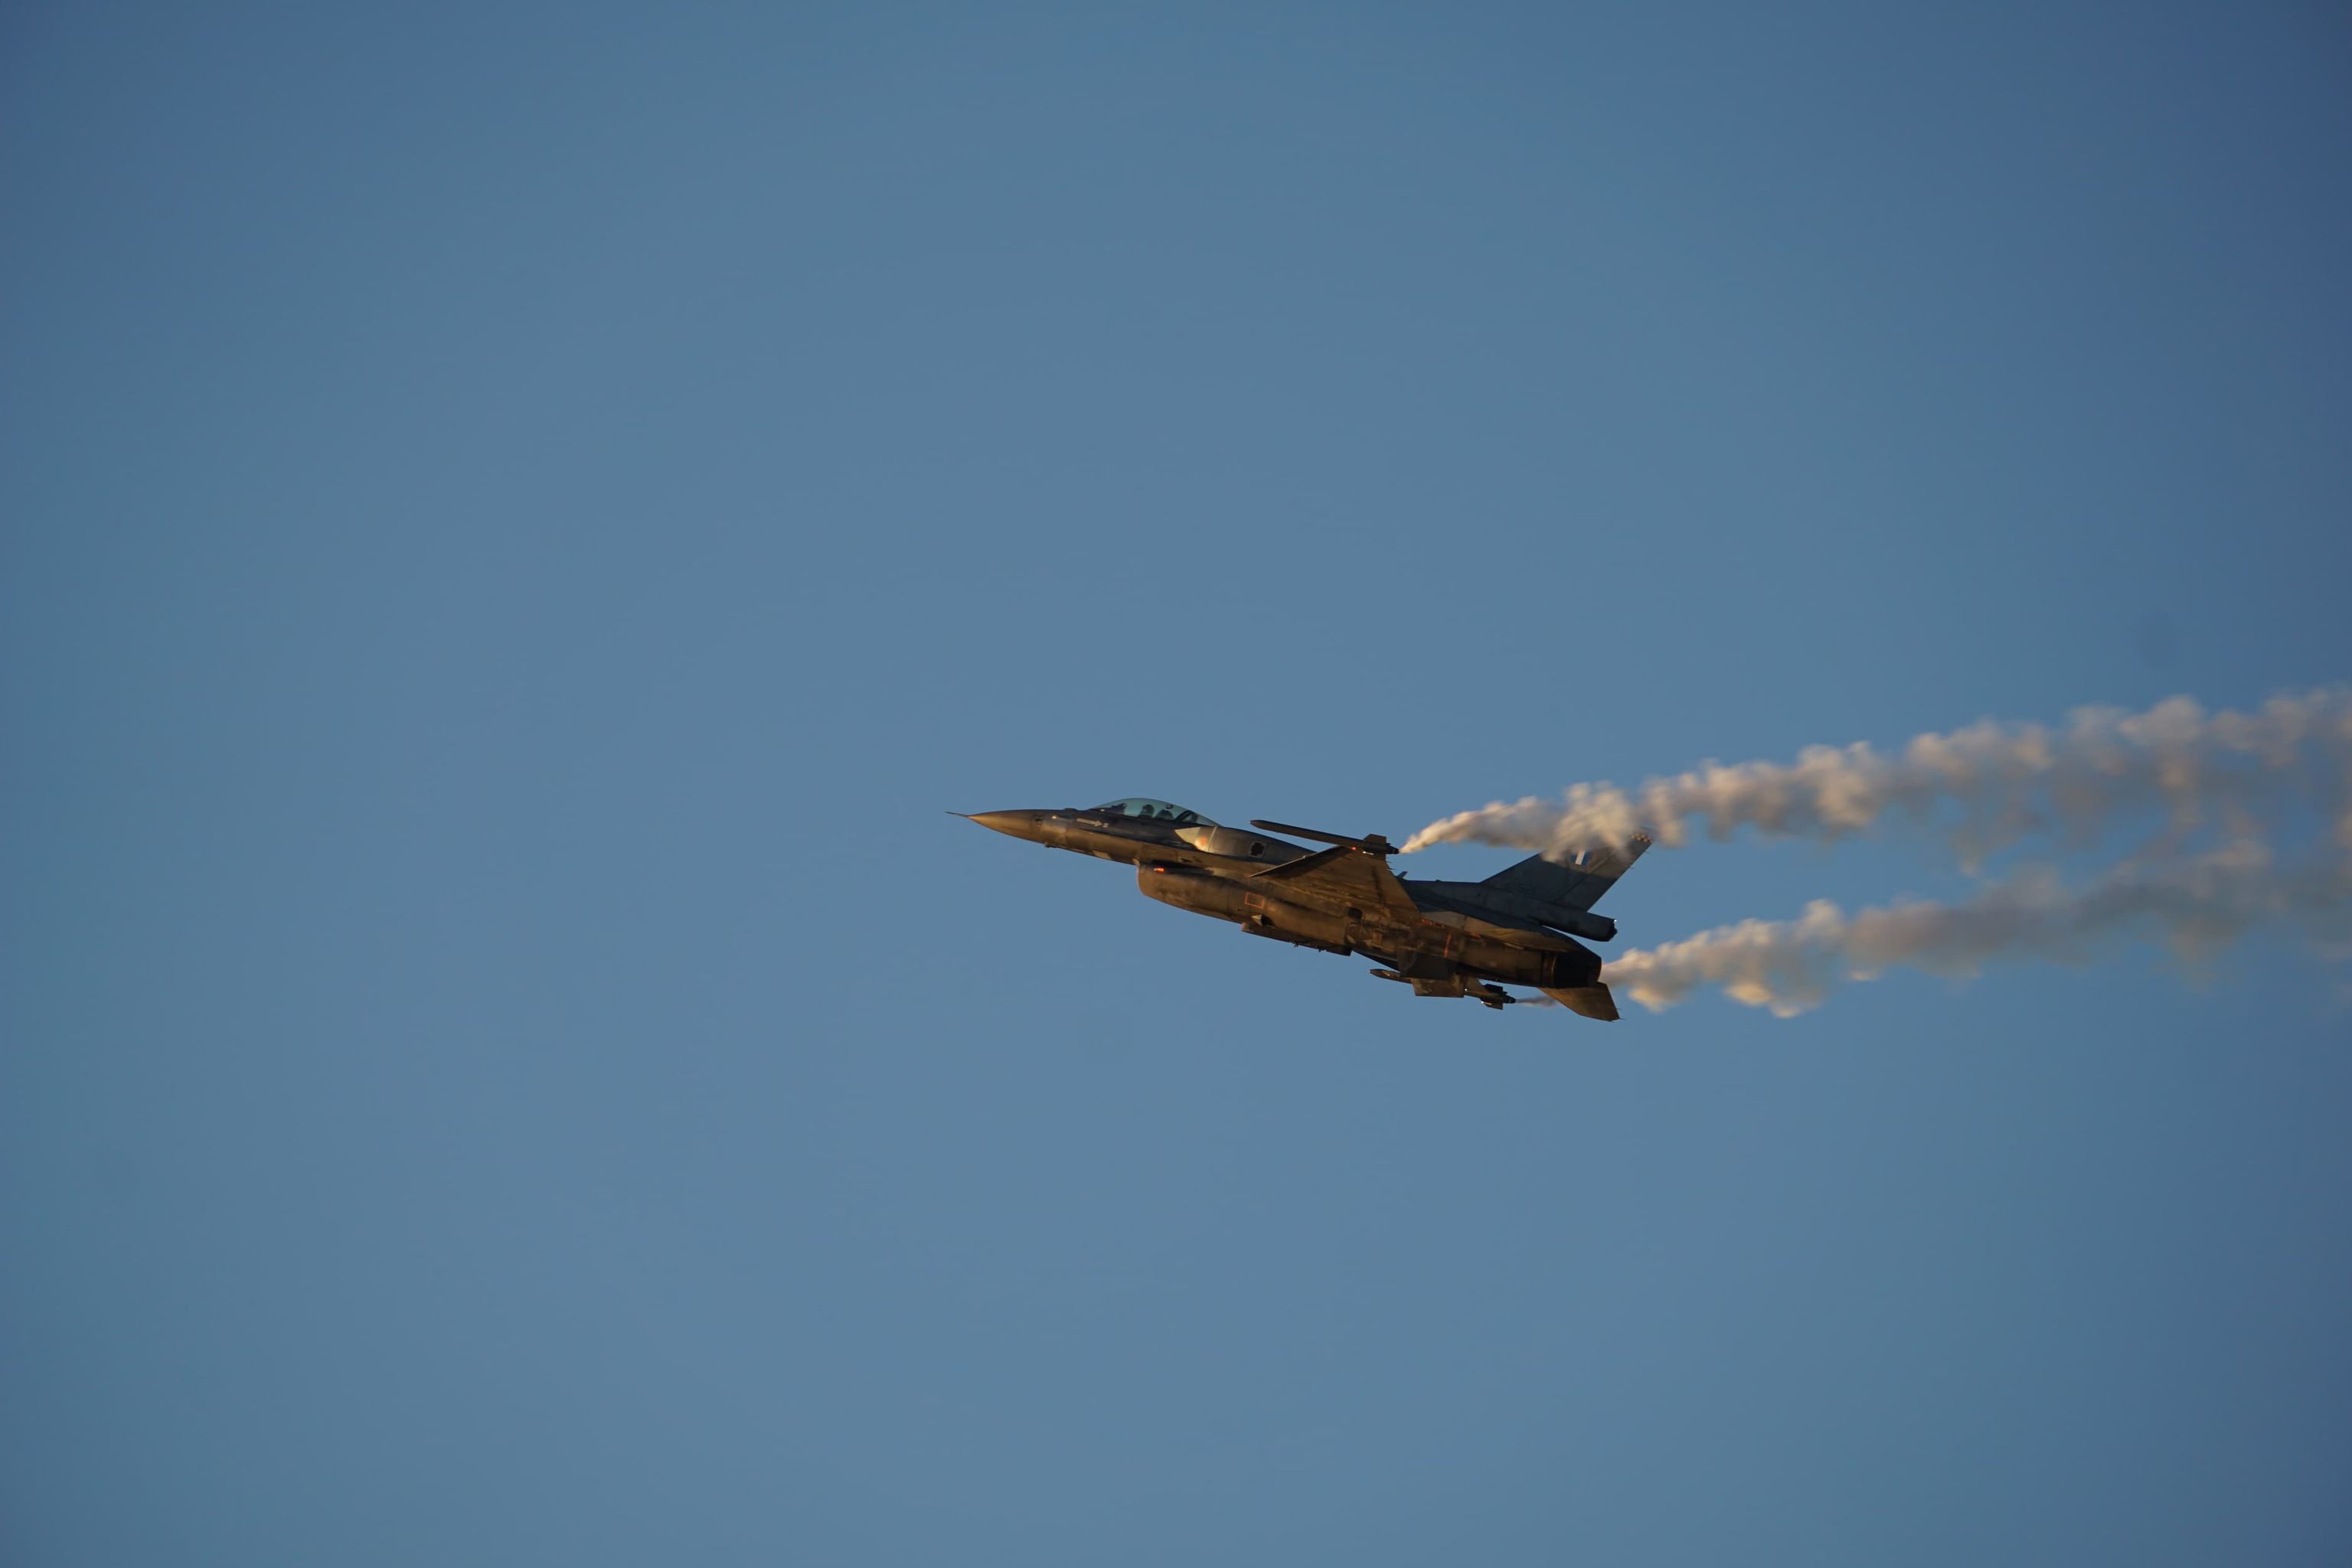 Μάχη της Κρήτης: Εκπληκτική επίδειξη F-16 στον ουρανό του Μάλεμε! (φωτο)